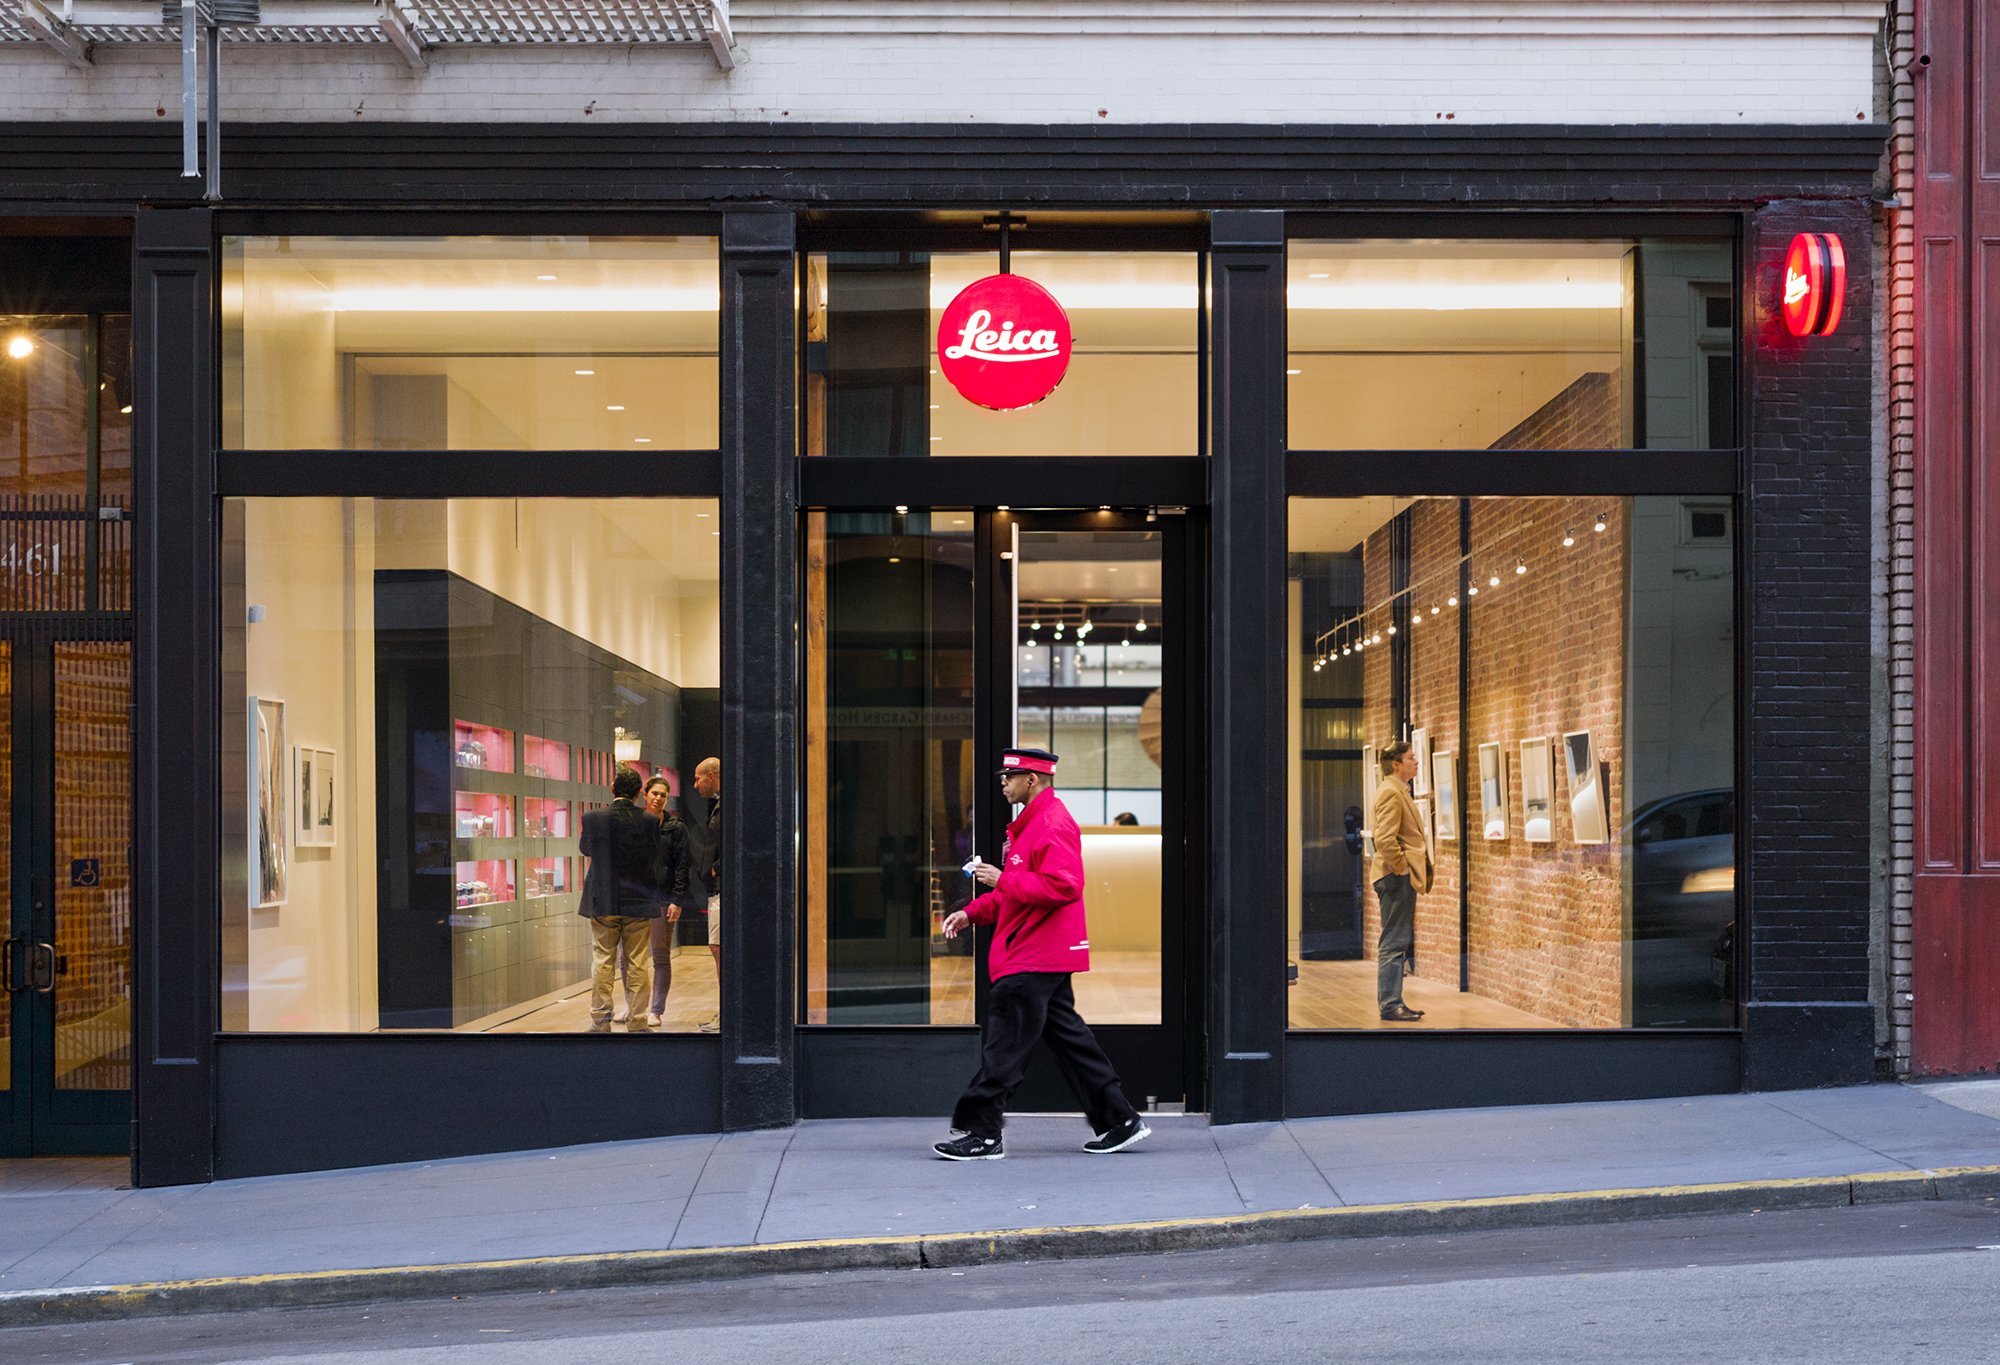 Leica Store - San Francisco  Leica Store - San Francisco